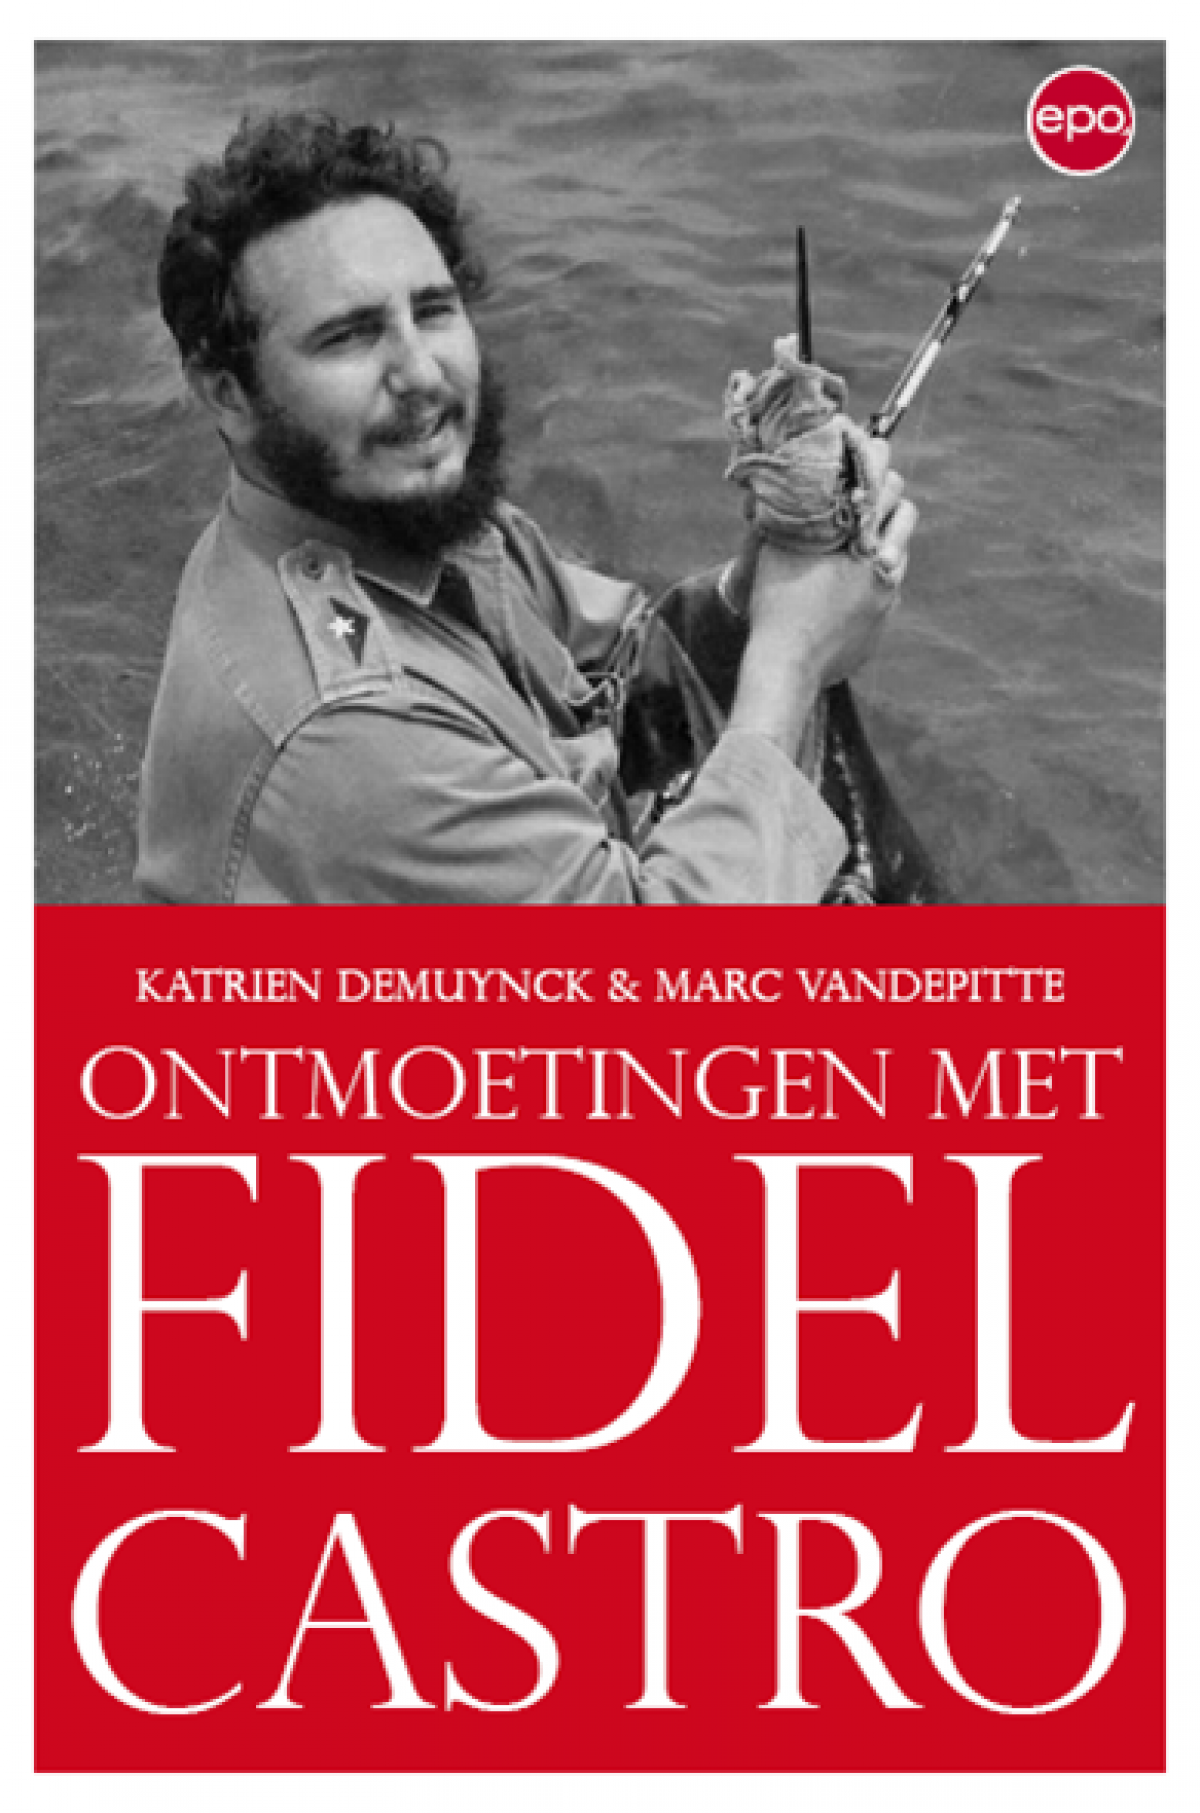 Boek: ontmoetingen met Fidel Castro